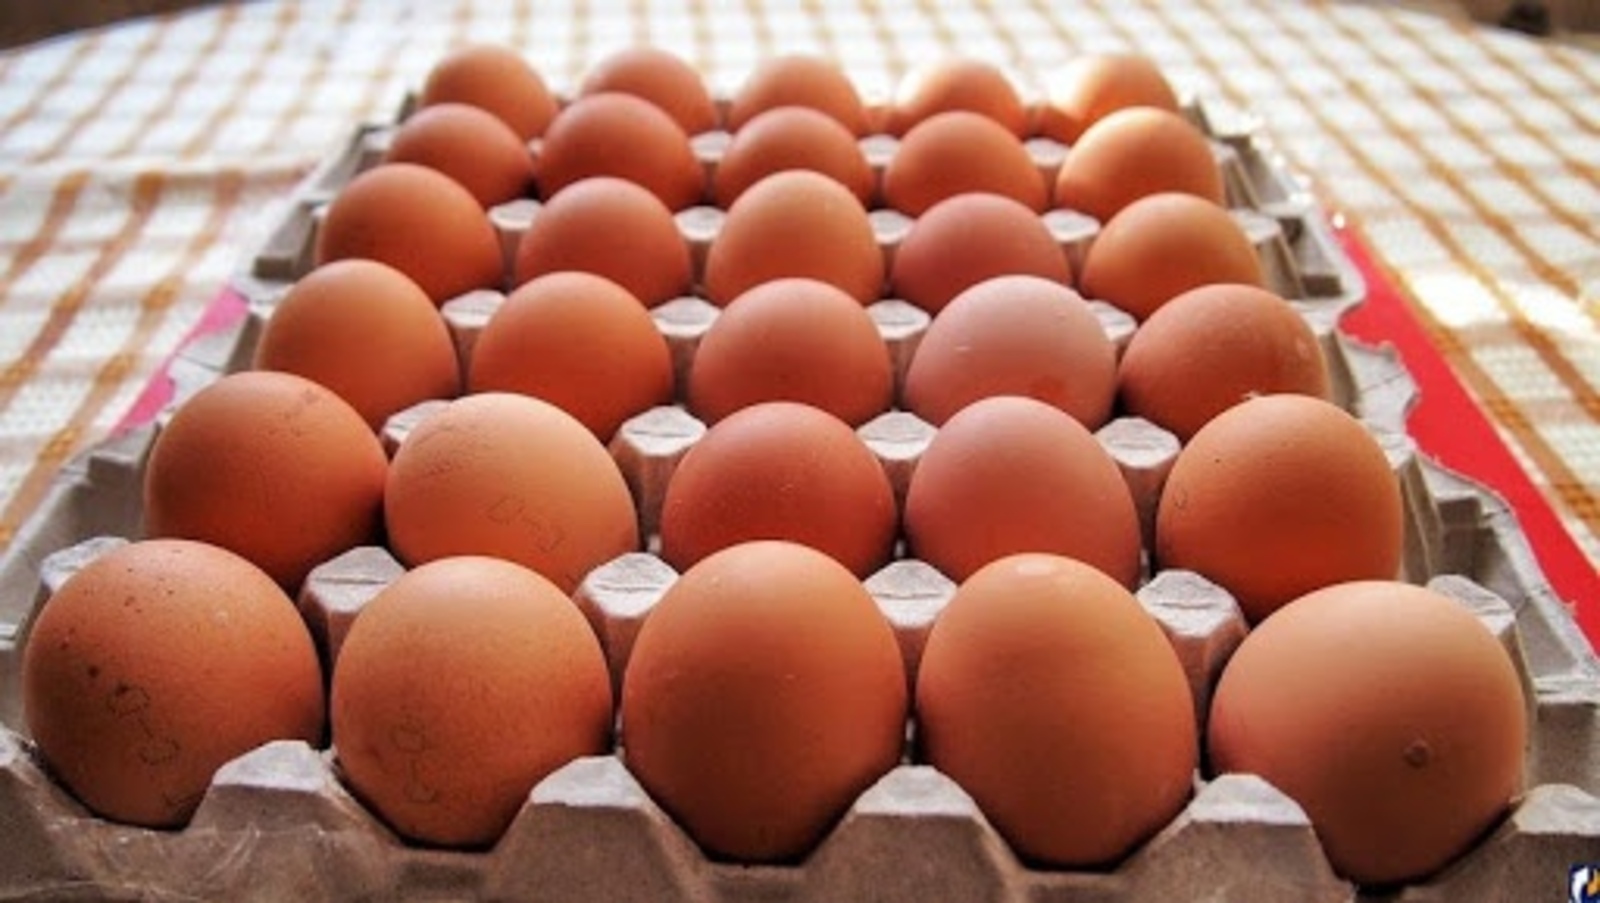 УФАС Башкирии потребовало от «Пятерочки» снизить цены на куриные яйца